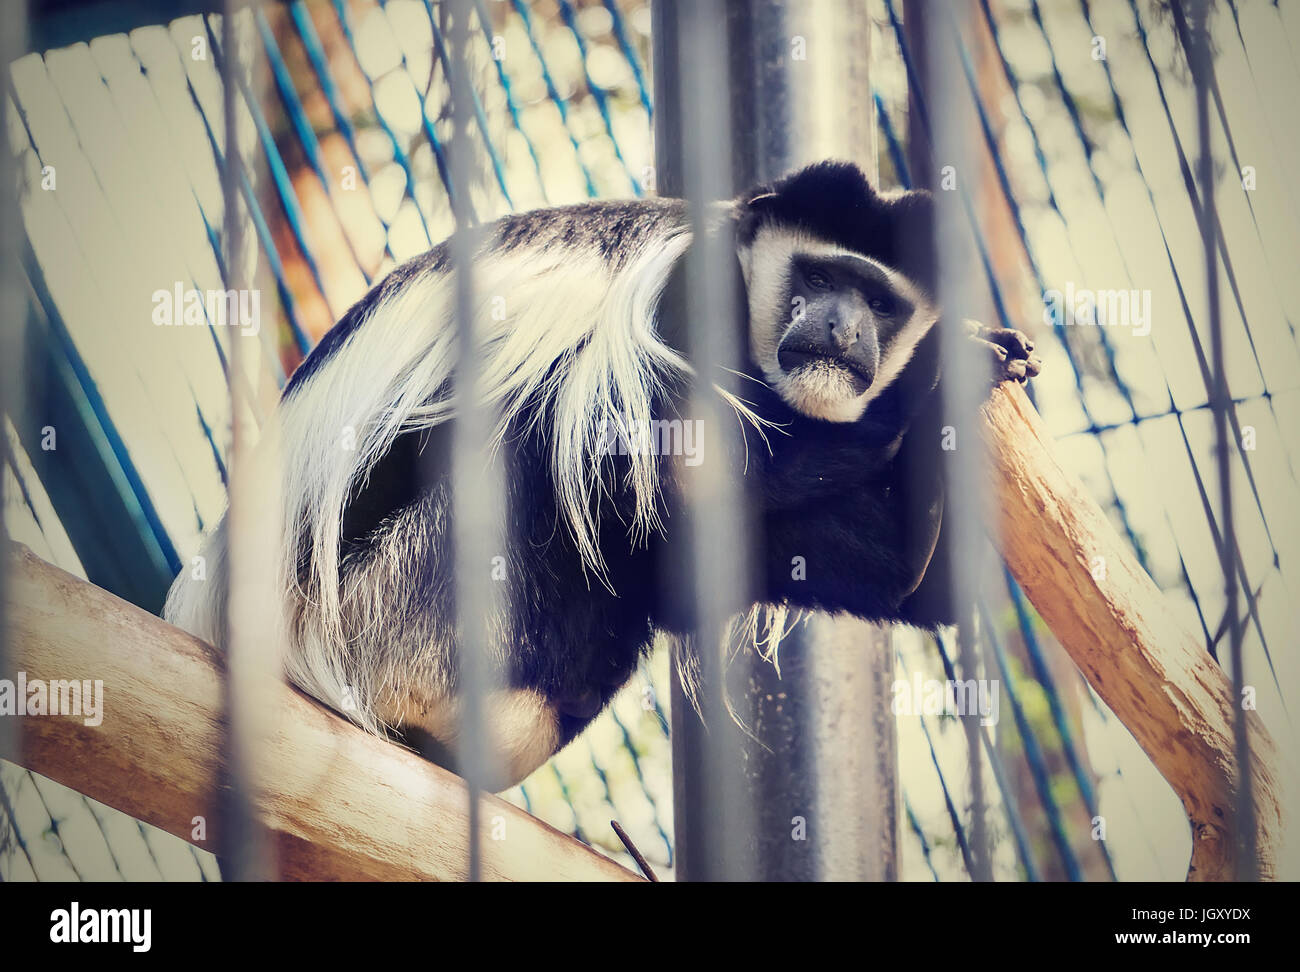 Triste monkey seduto in una gabbia con il suo ritorno al ramo dell'albero. La scimmia triste sta subendo la reclusione in una gabbia. Foto Stock